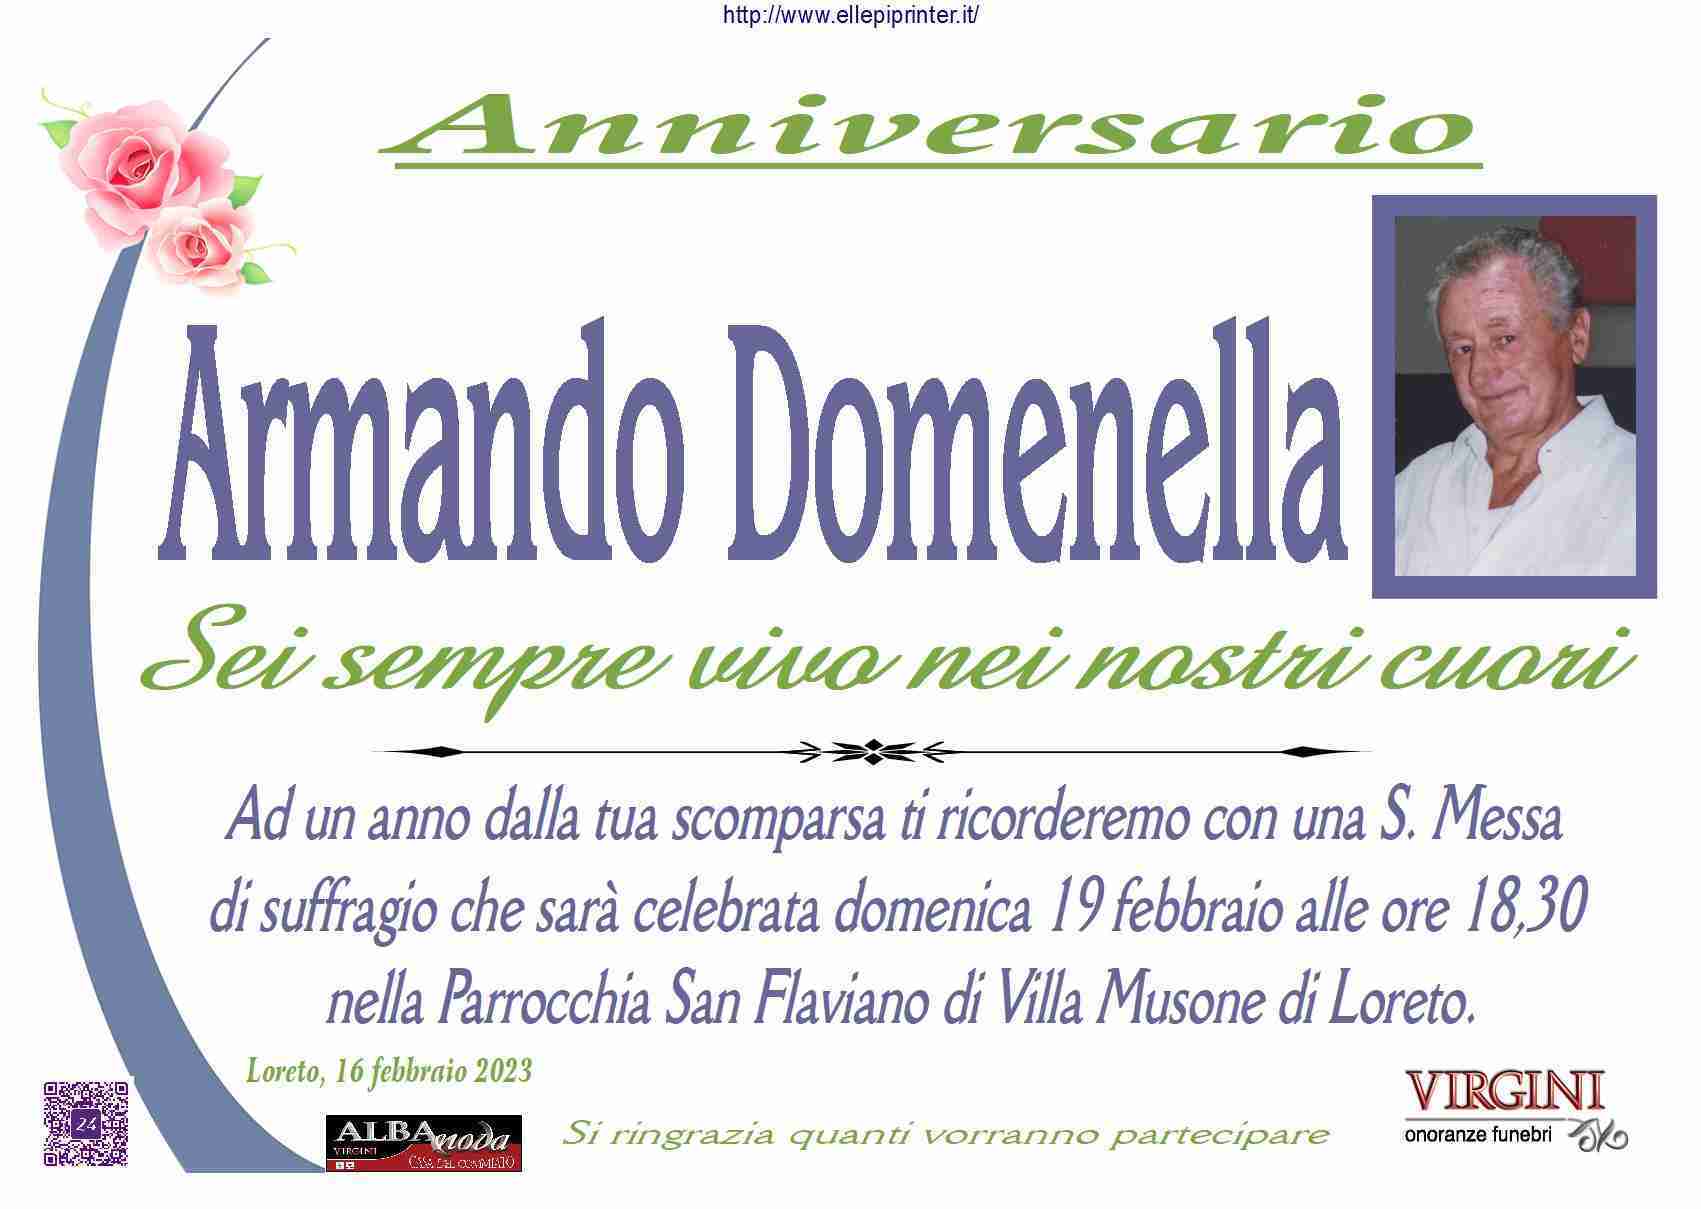 Armando Domenella